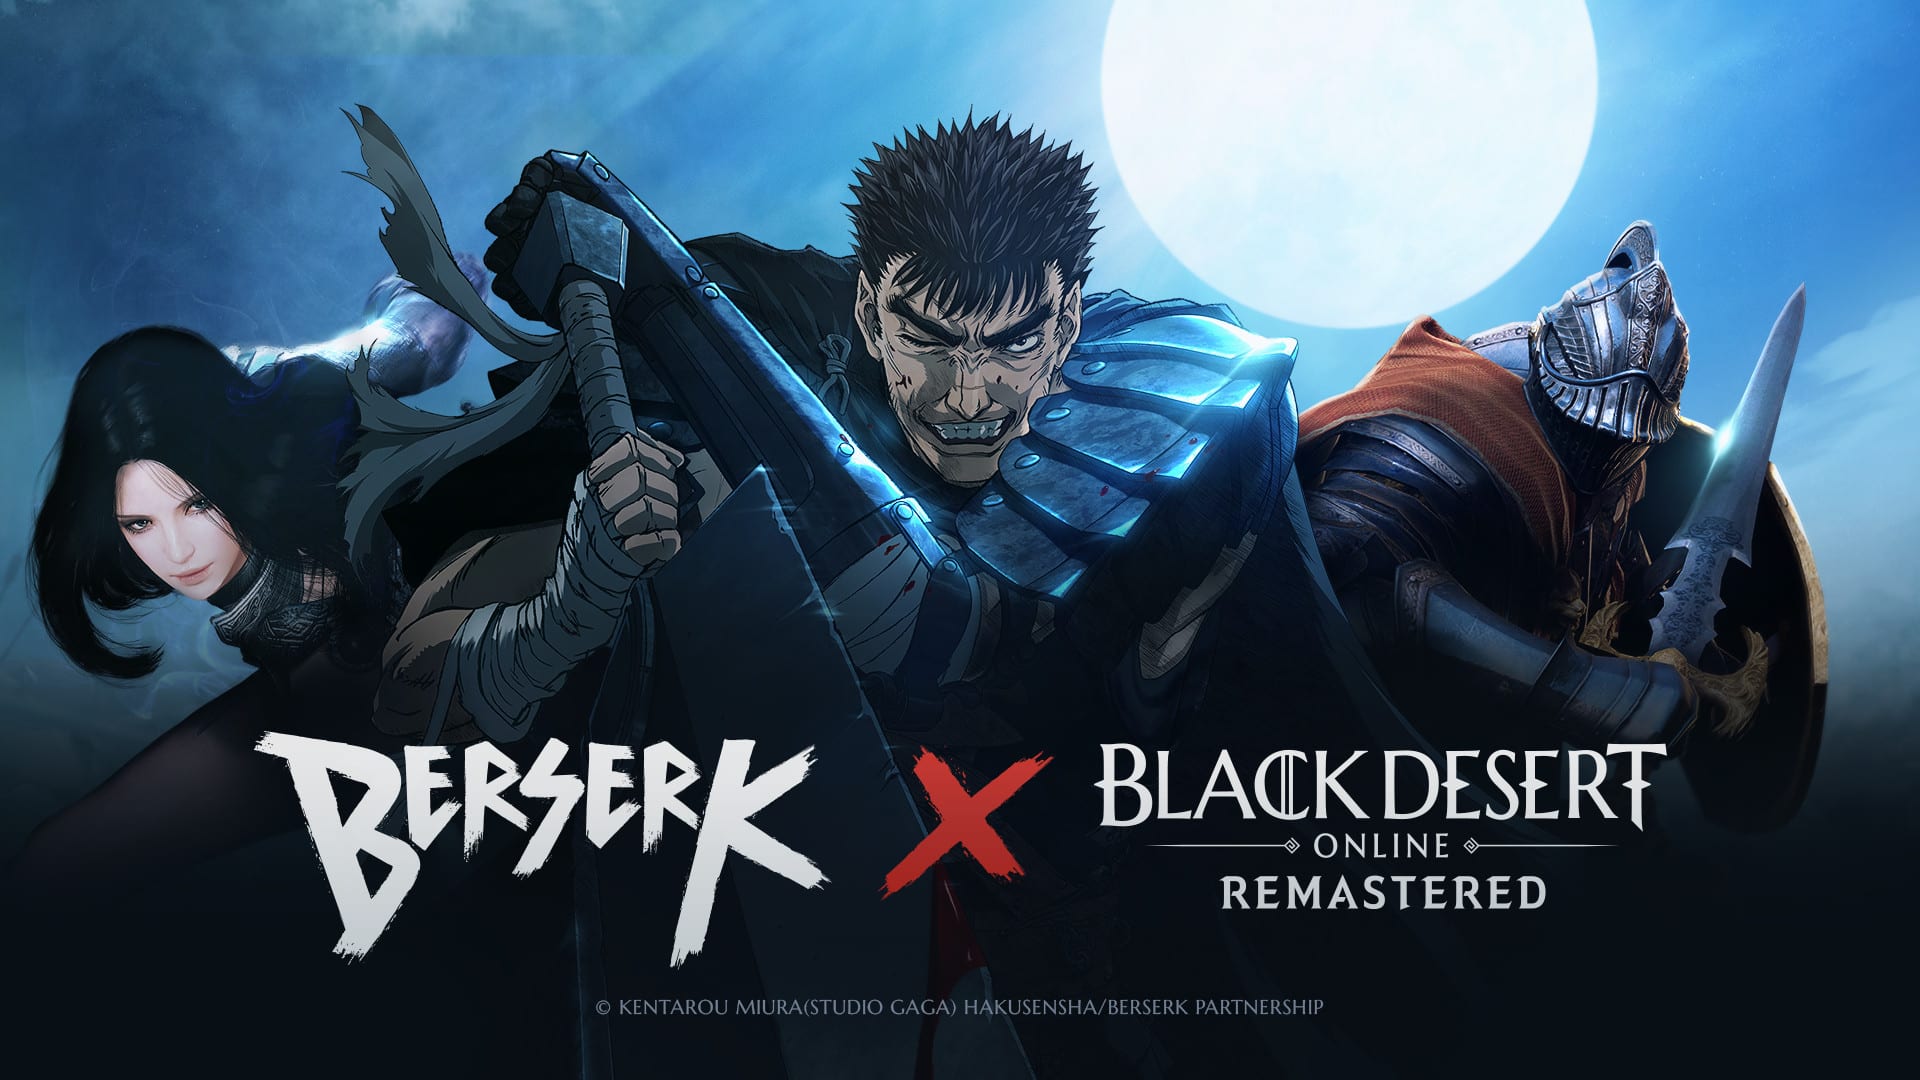 Black Desert Online Launches Berserk Anime Crossover Event